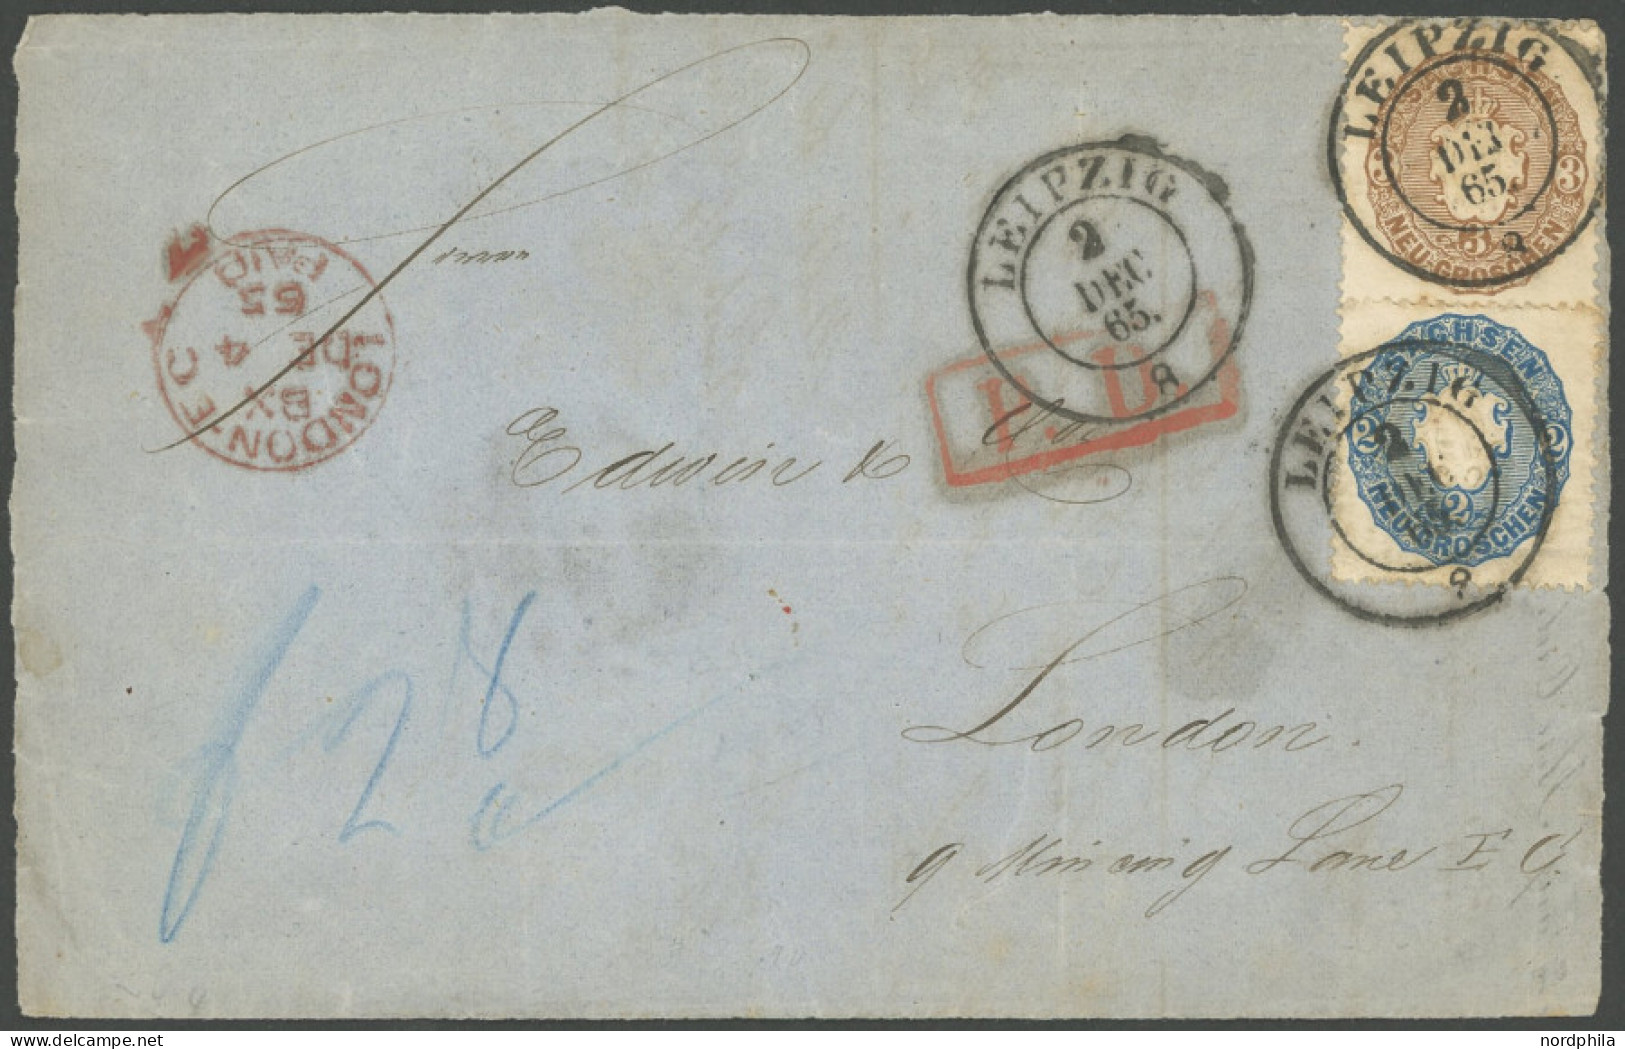 SACHSEN 17a,18b BRIEF, 1865, 2 Ngr. Blau Und 3 Ngr. Braun Auf Briefvorderseite Von LEIPZIG Nach London, 2 Ngr. Waagerech - Saxony